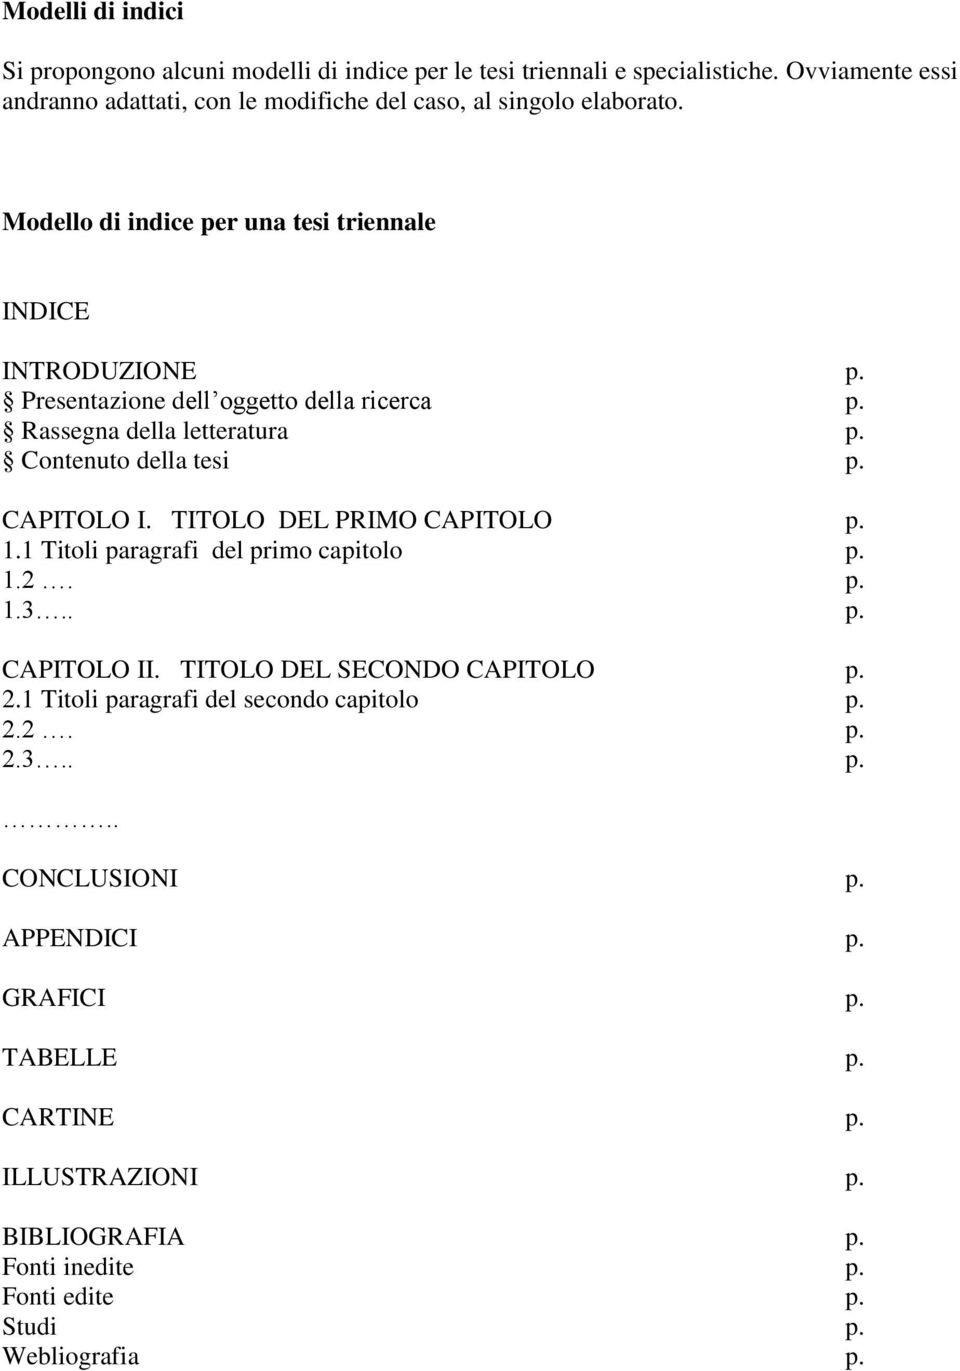 Presentazione dell oggetto della ricerca p. Rassegna della letteratura p. Contenuto della tesi p. CAPITOLO I. TITOLO DEL PRIMO CAPITOLO p. 1.